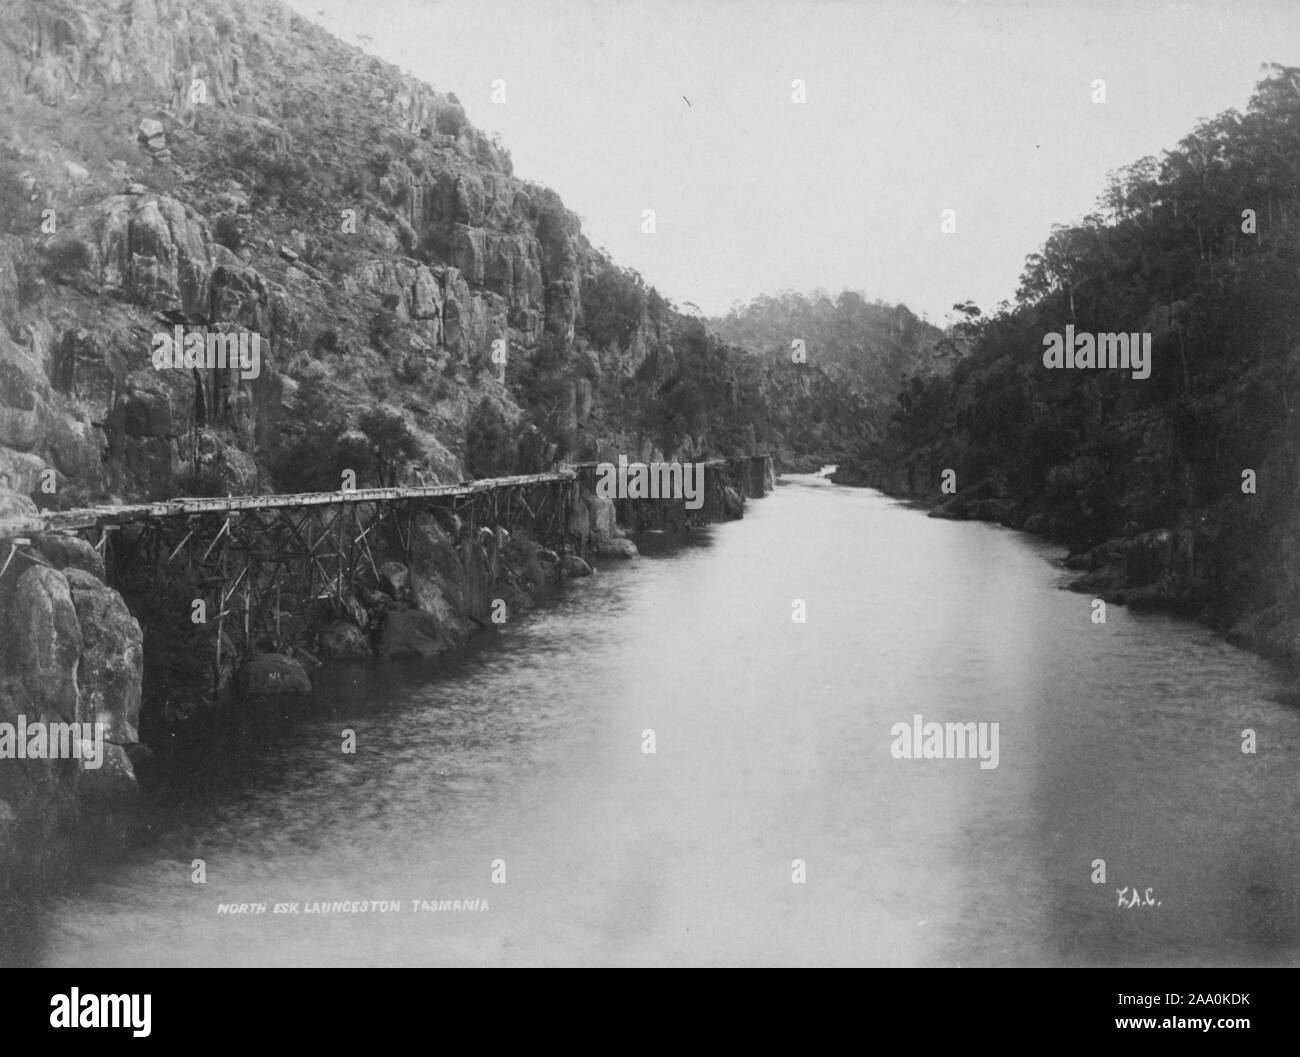 Photographie en noir et blanc d'une gorge étroite de la rivière North Esk près de Launceston, Tasmanie, Australie, par le photographe Frank Coxhead, 1885. À partir de la Bibliothèque publique de New York. () Banque D'Images